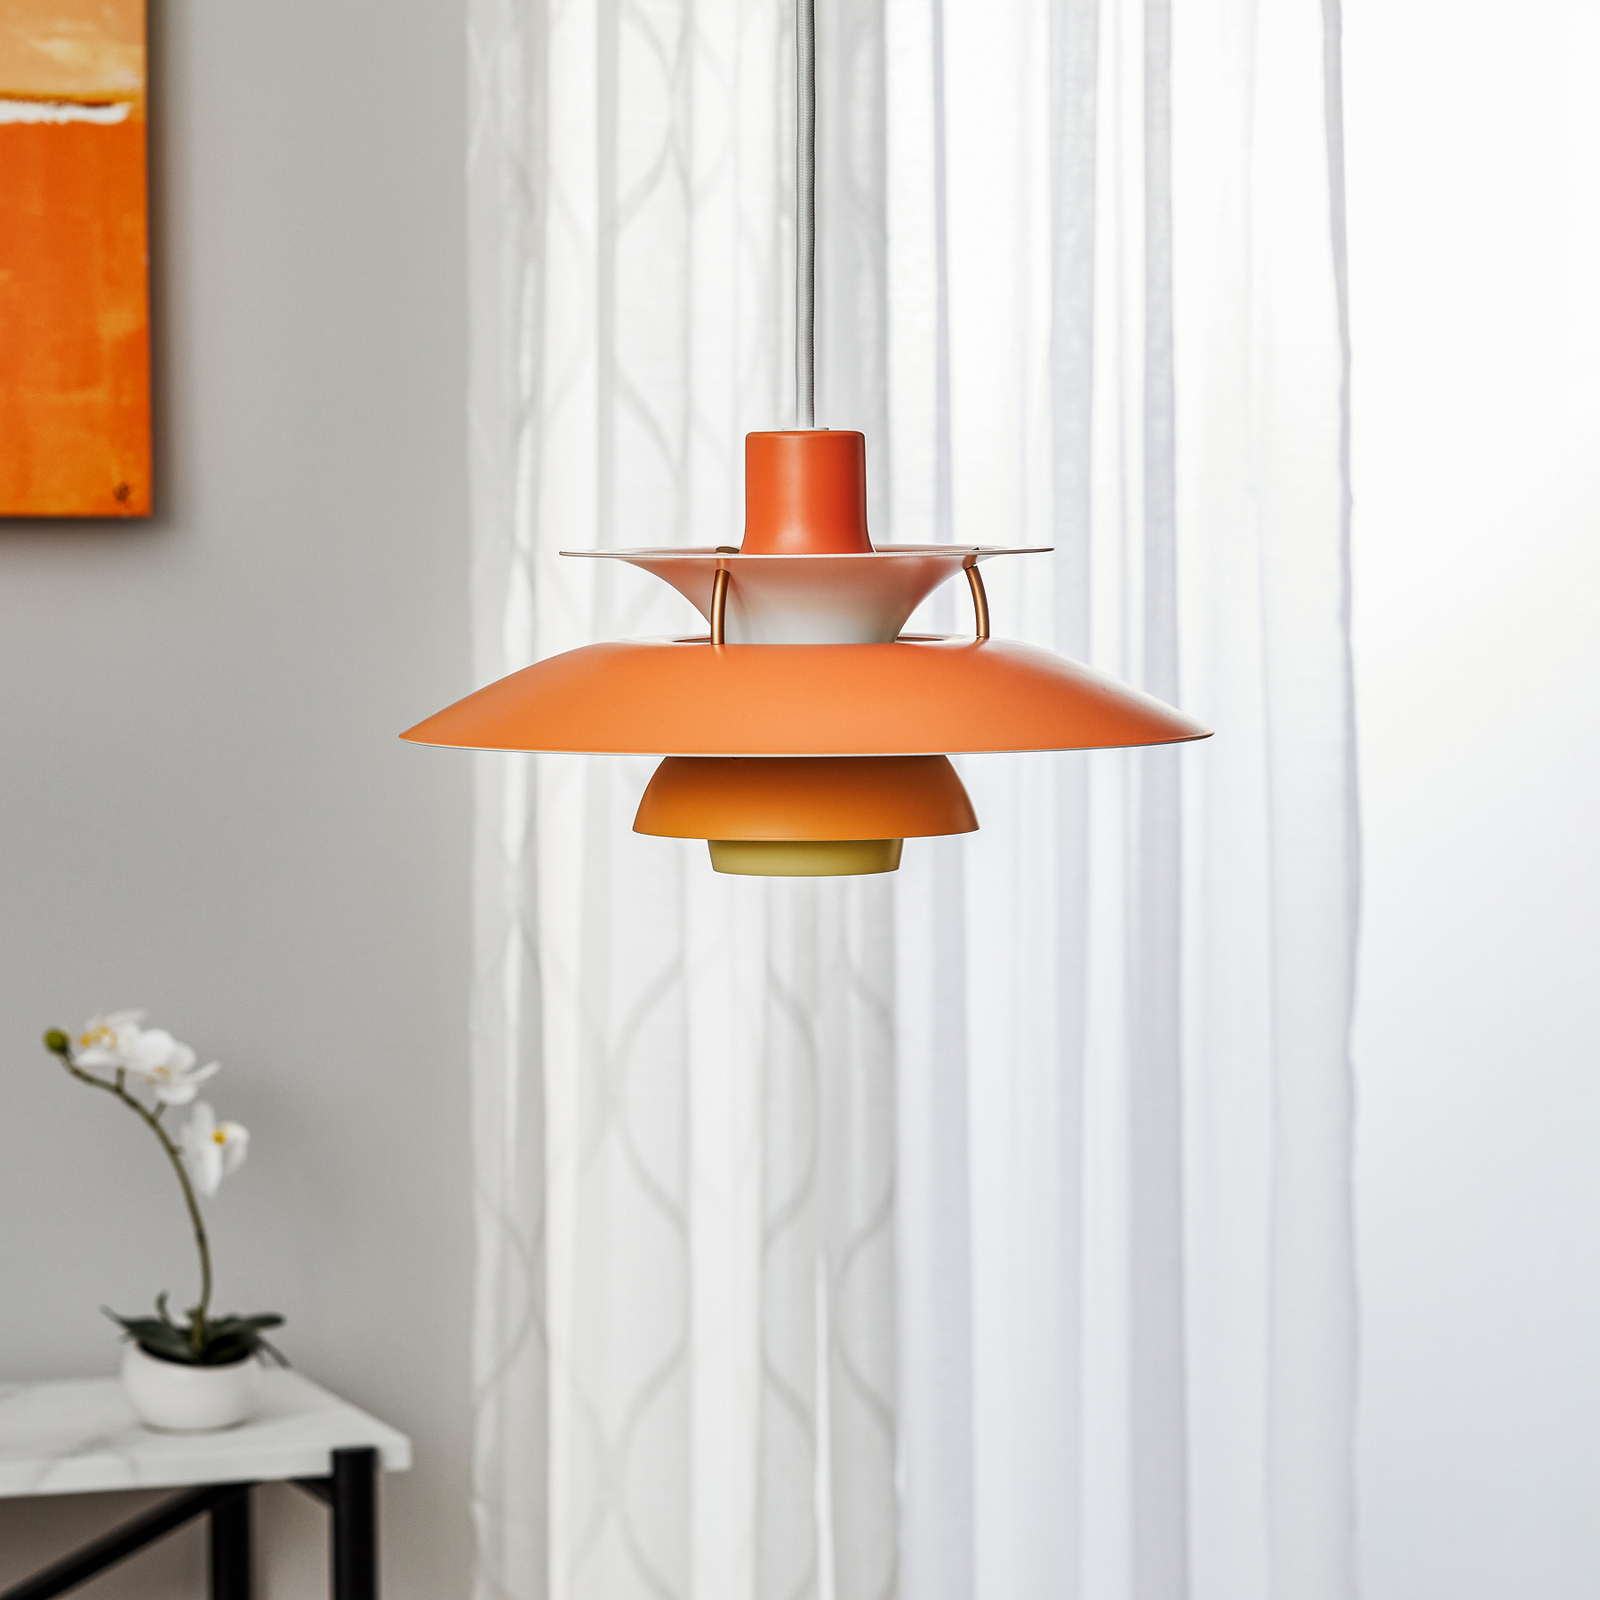 Louis Poulsen PH 5 Mini–lampa wisząca,pomarańczowa